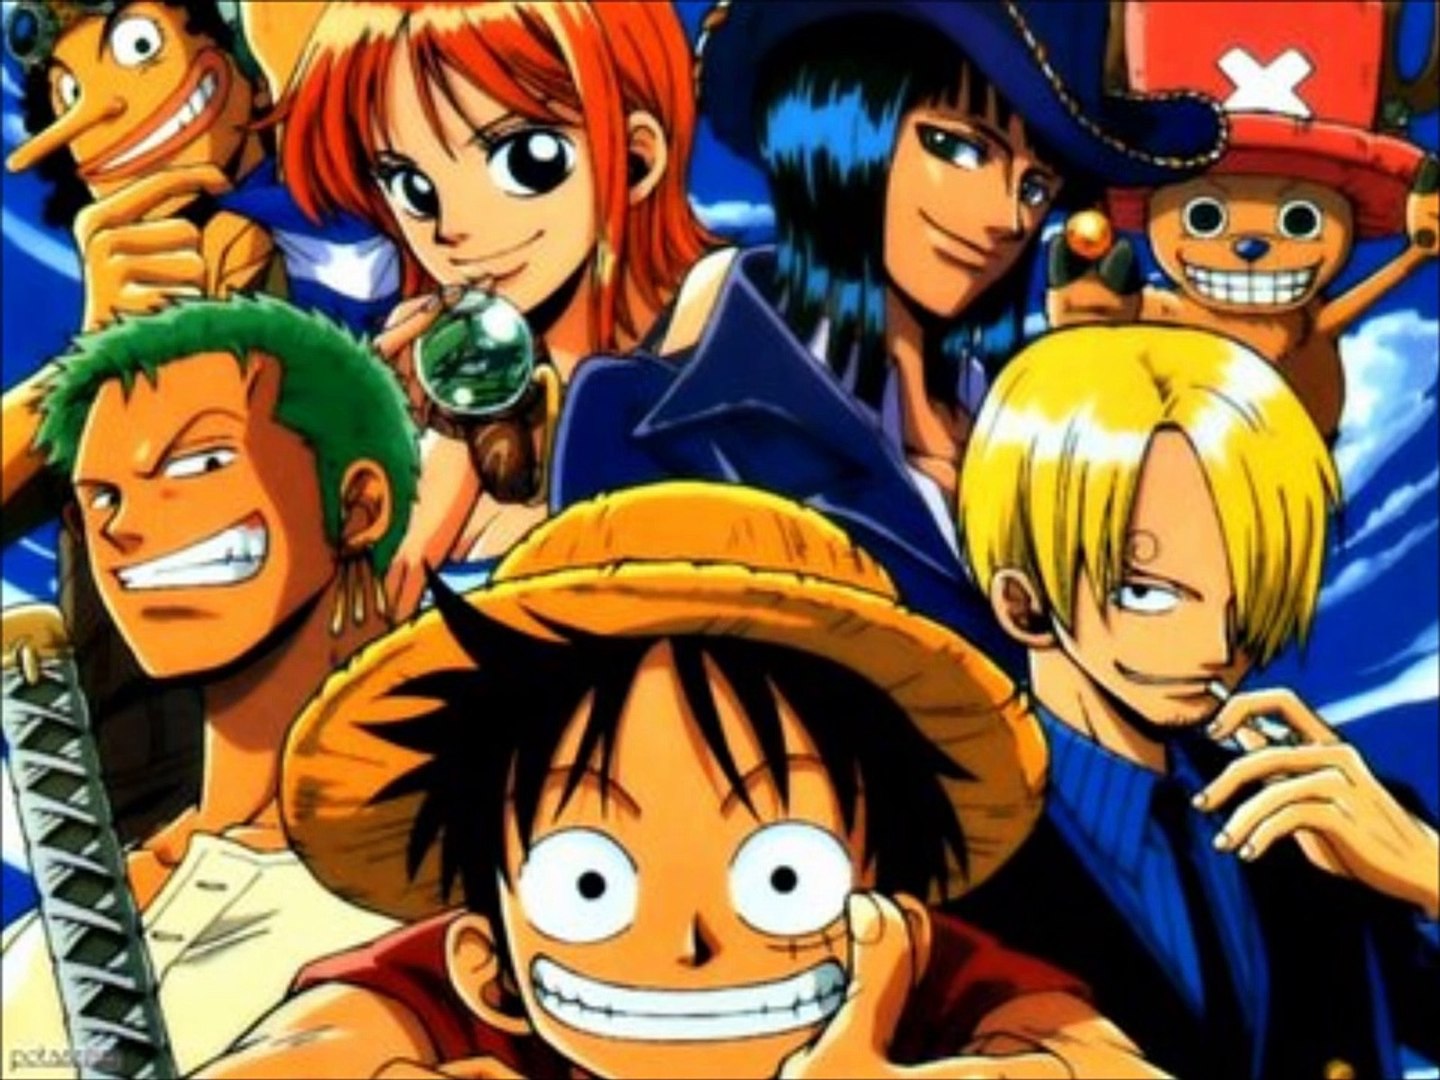 One Piece - Abertura 3 em Português (BR) - Hikari E 